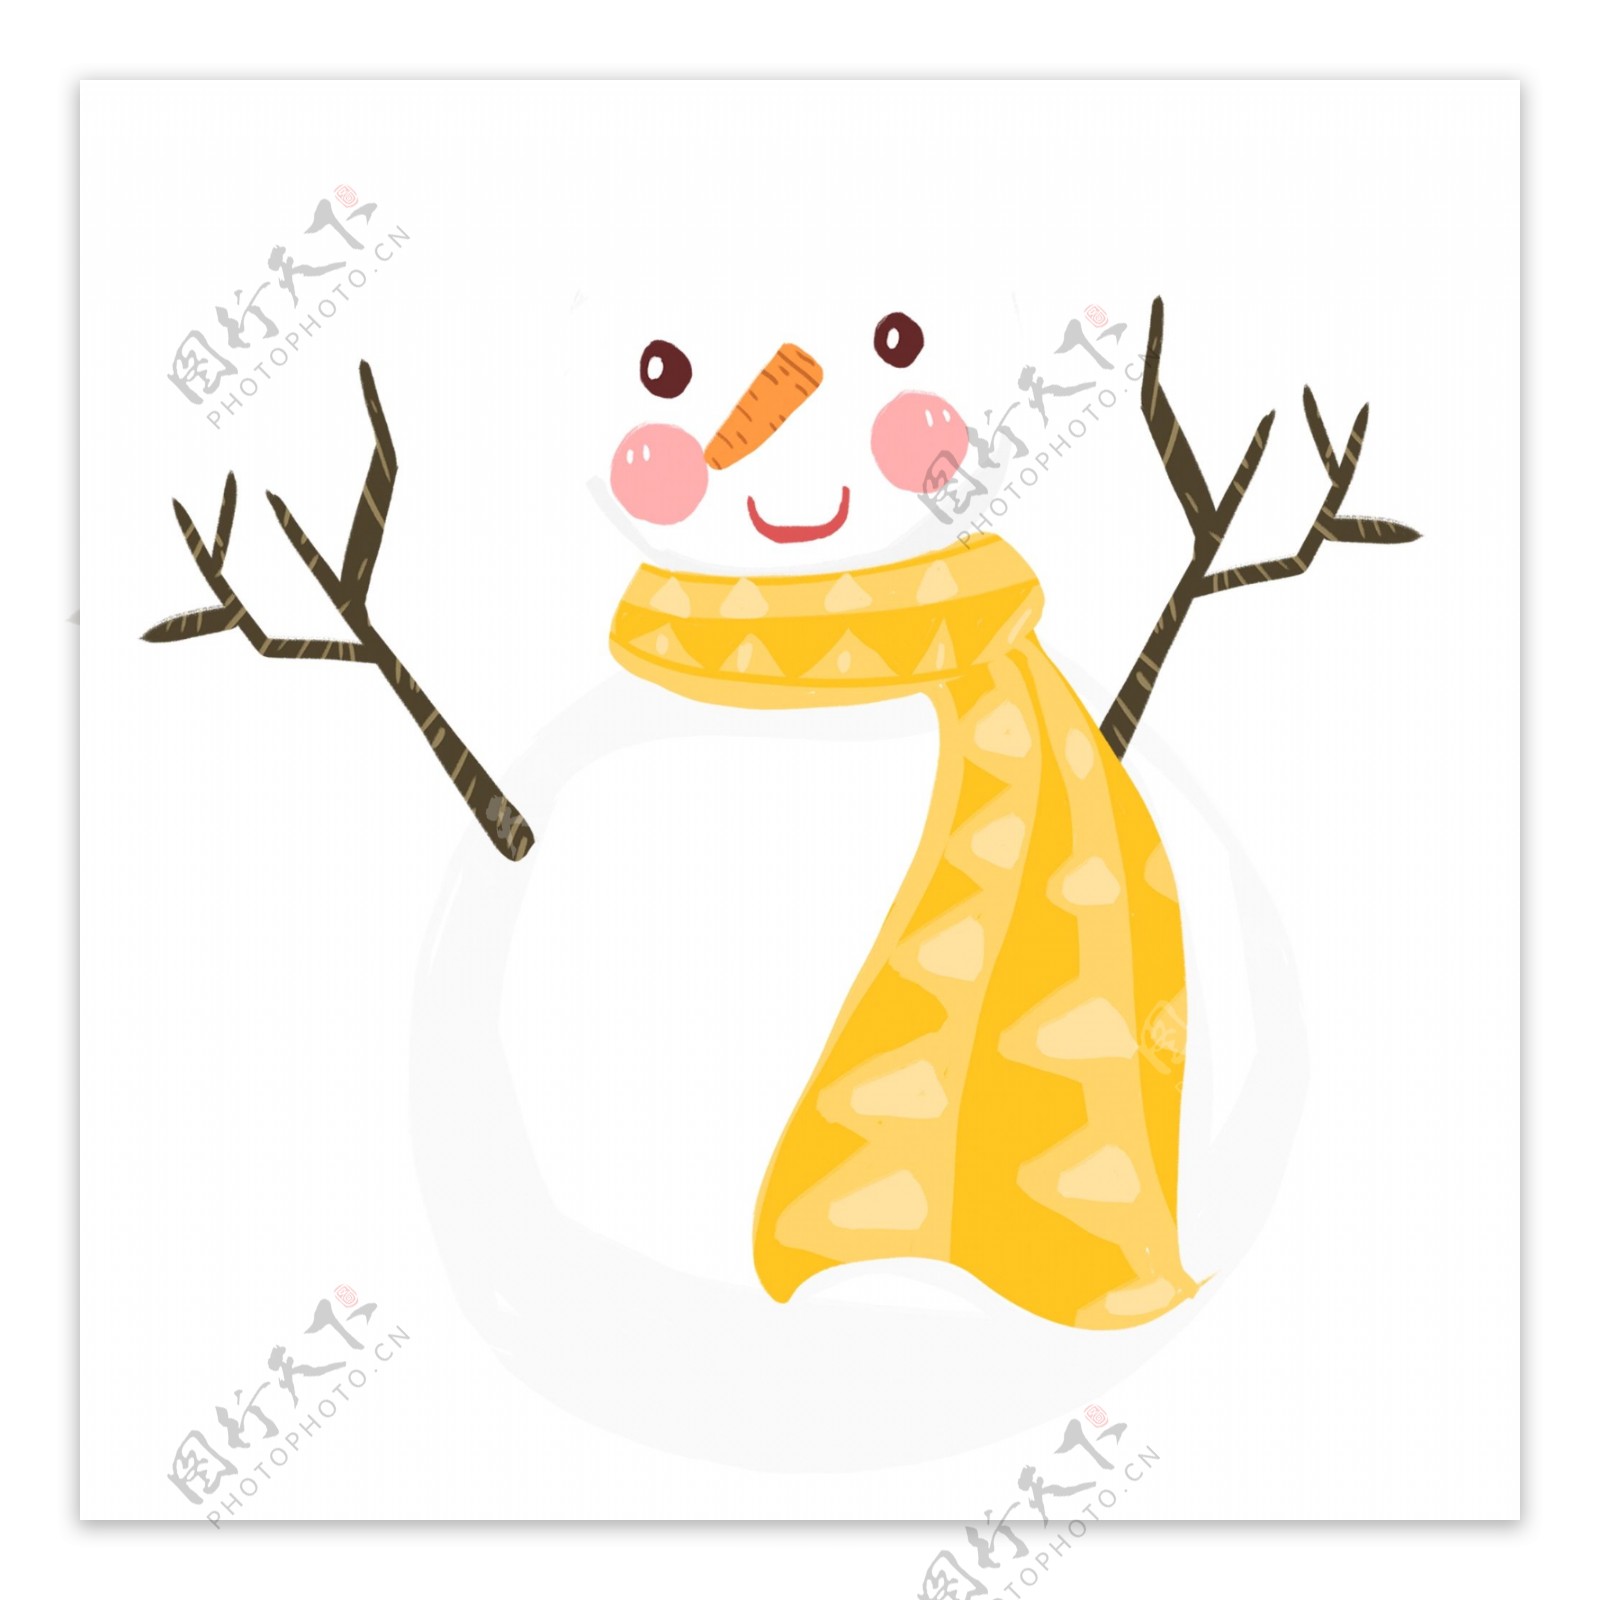 简约可爱围着黄围巾的雪人原创元素